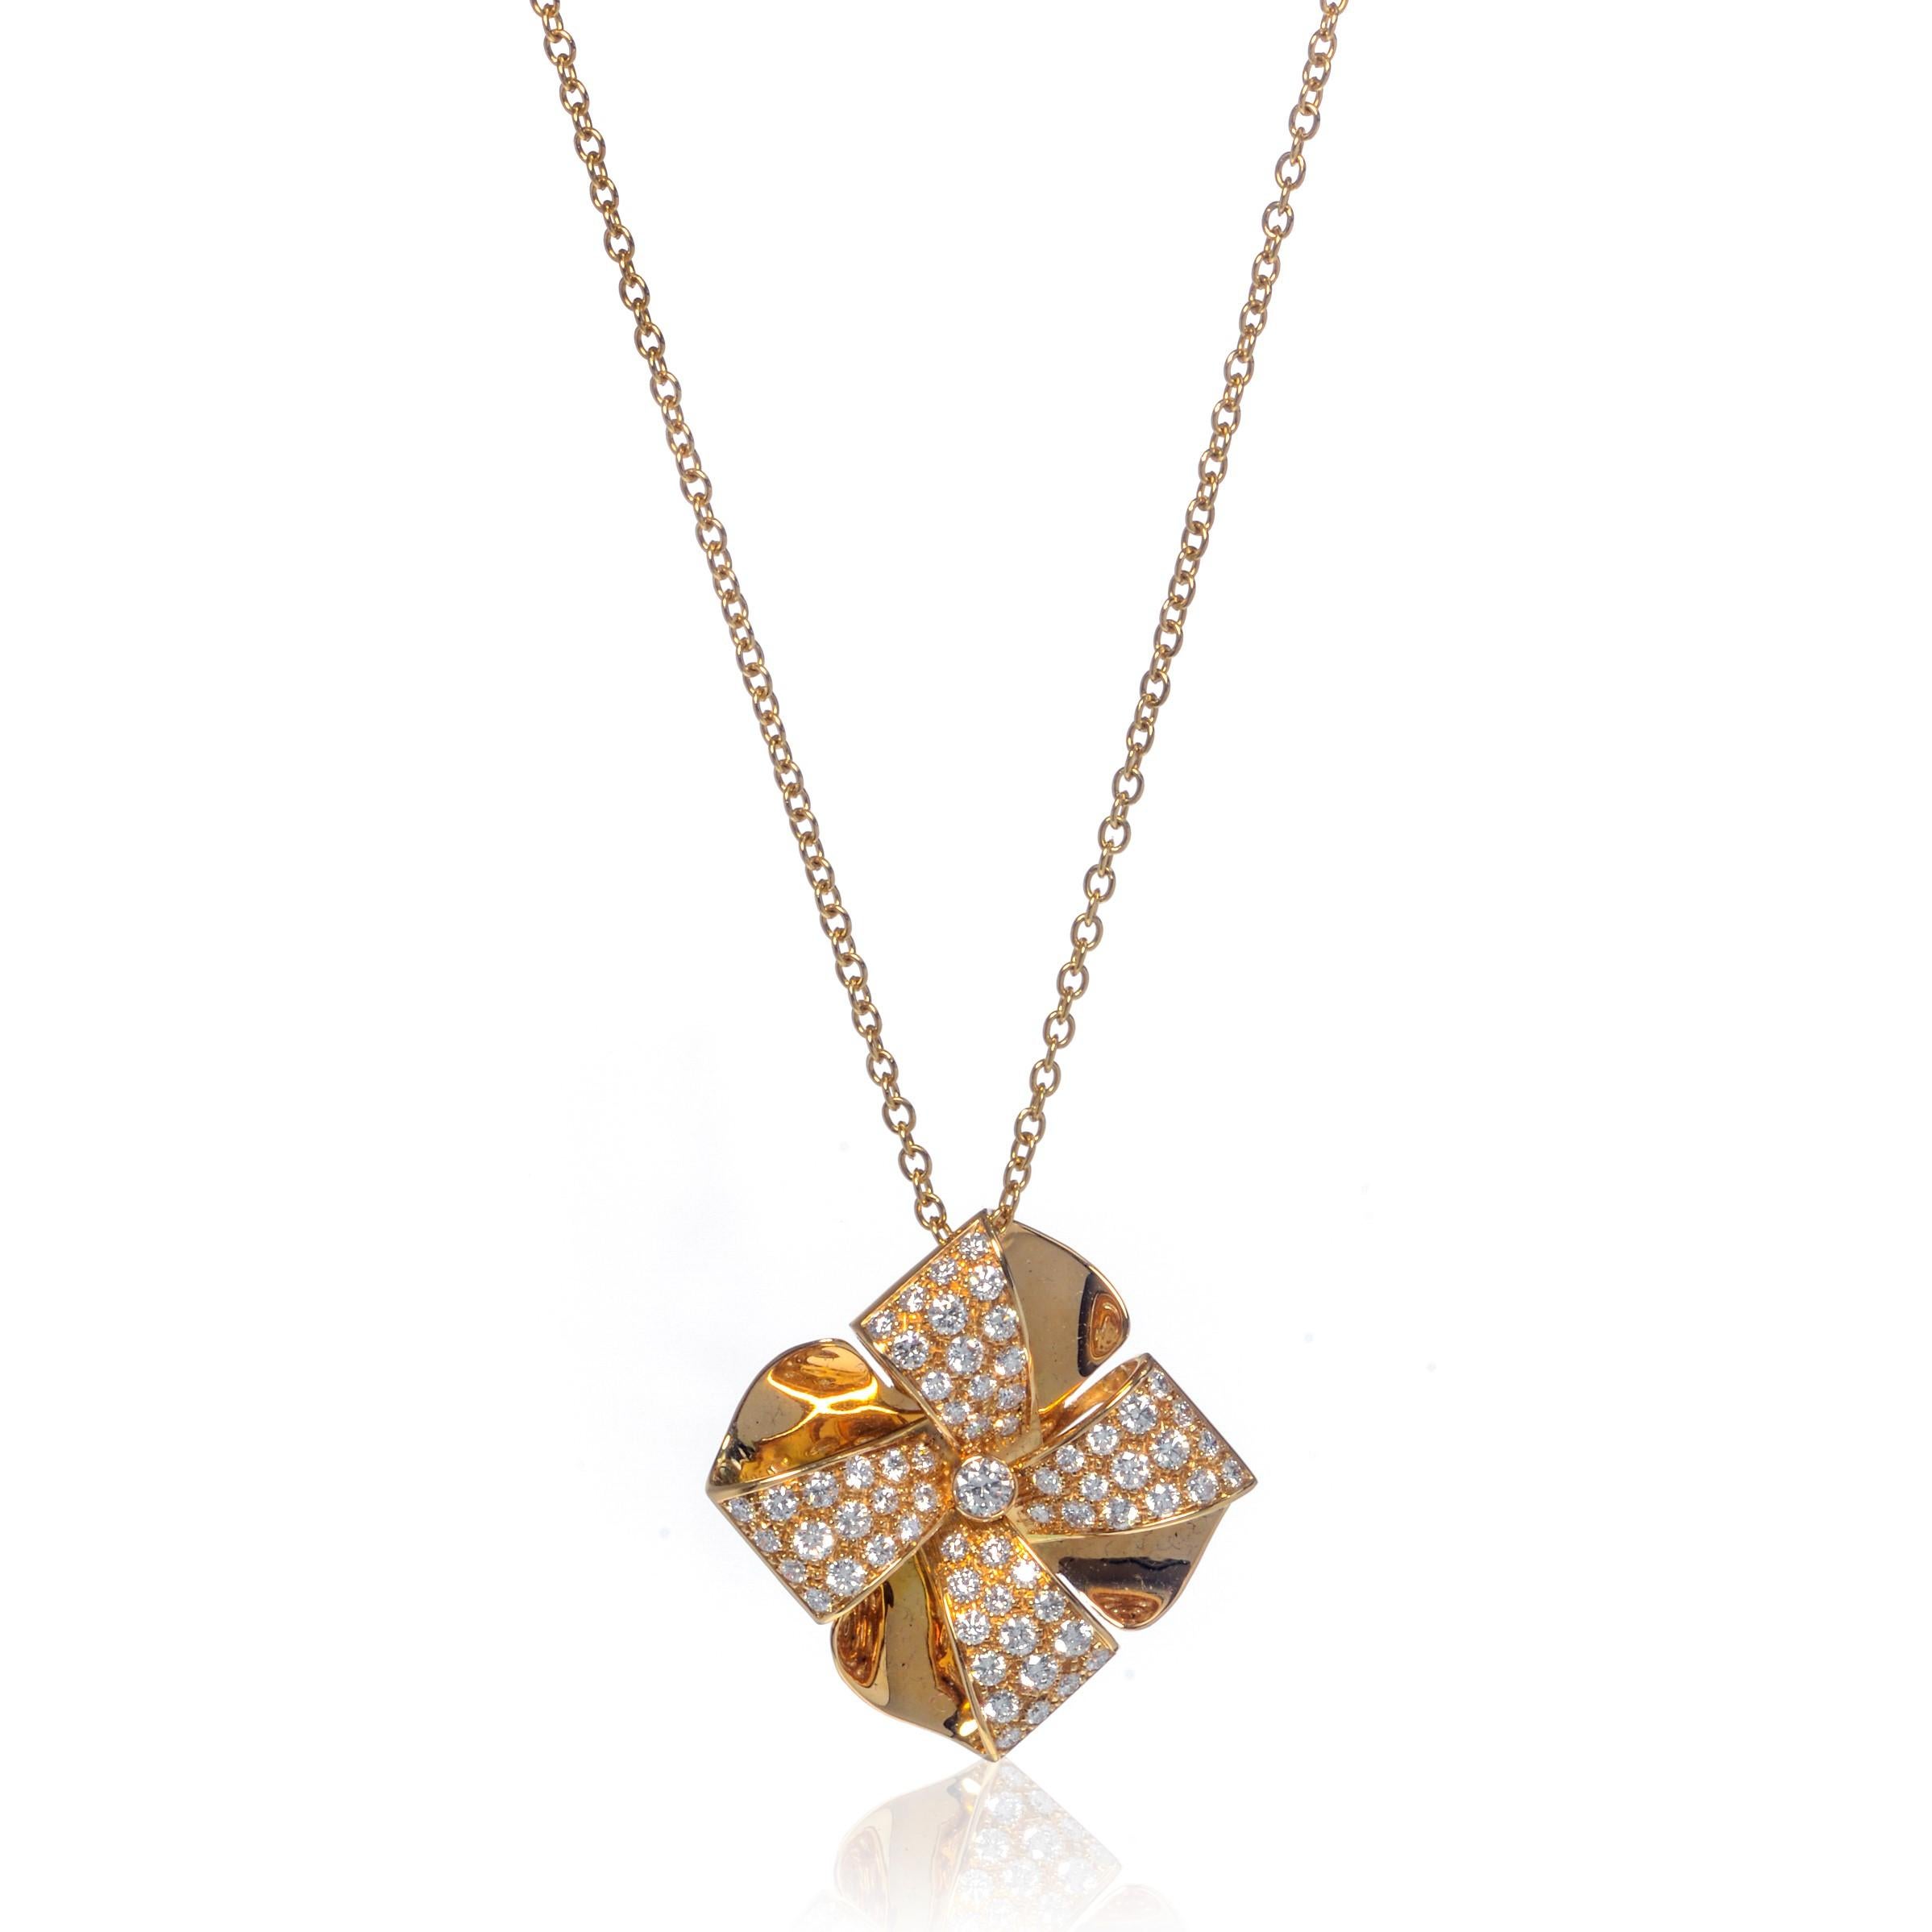 Ce magnifique collier pendentif Luca Carati en or jaune 18 carats est orné d'une magnifique série de diamants 1,73cttw en forme de fleur. Dimond couleur G et pureté VVS. Poids : 12,5 grammes. Longueur de la chaîne : 16.5 pouces. Taille du pendentif